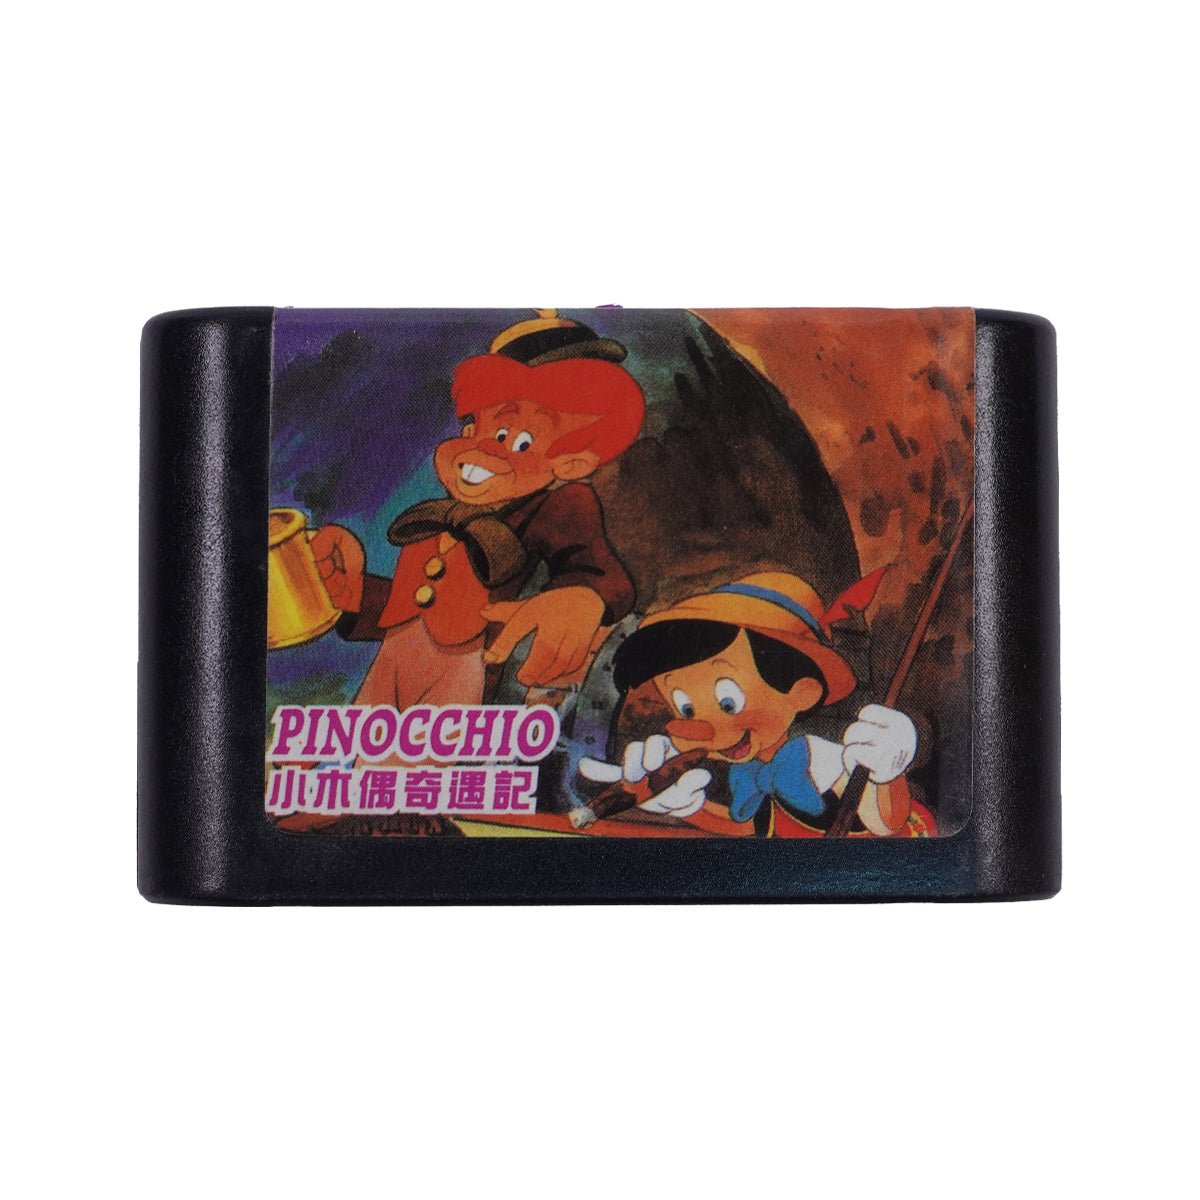 (Pre-Owned) Pinocchio - Sega - ريترو - Store 974 | ستور ٩٧٤